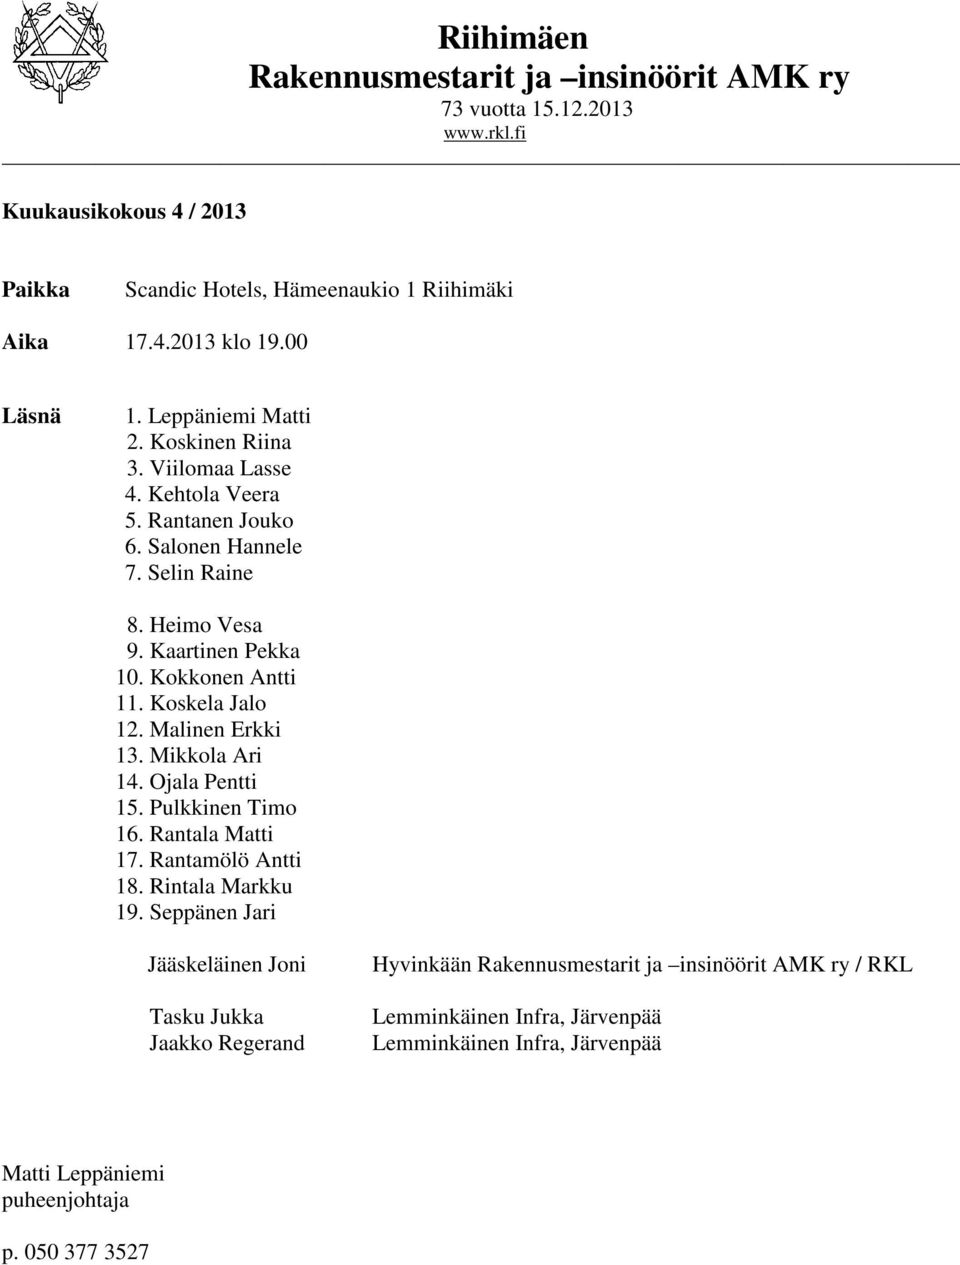 Kokkonen Antti 11. Koskela Jalo 12. Malinen Erkki 13. Mikkola Ari 14. Ojala Pentti 15. Pulkkinen Timo 16. Rantala Matti 17. Rantamölö Antti 18. Rintala Markku 19.